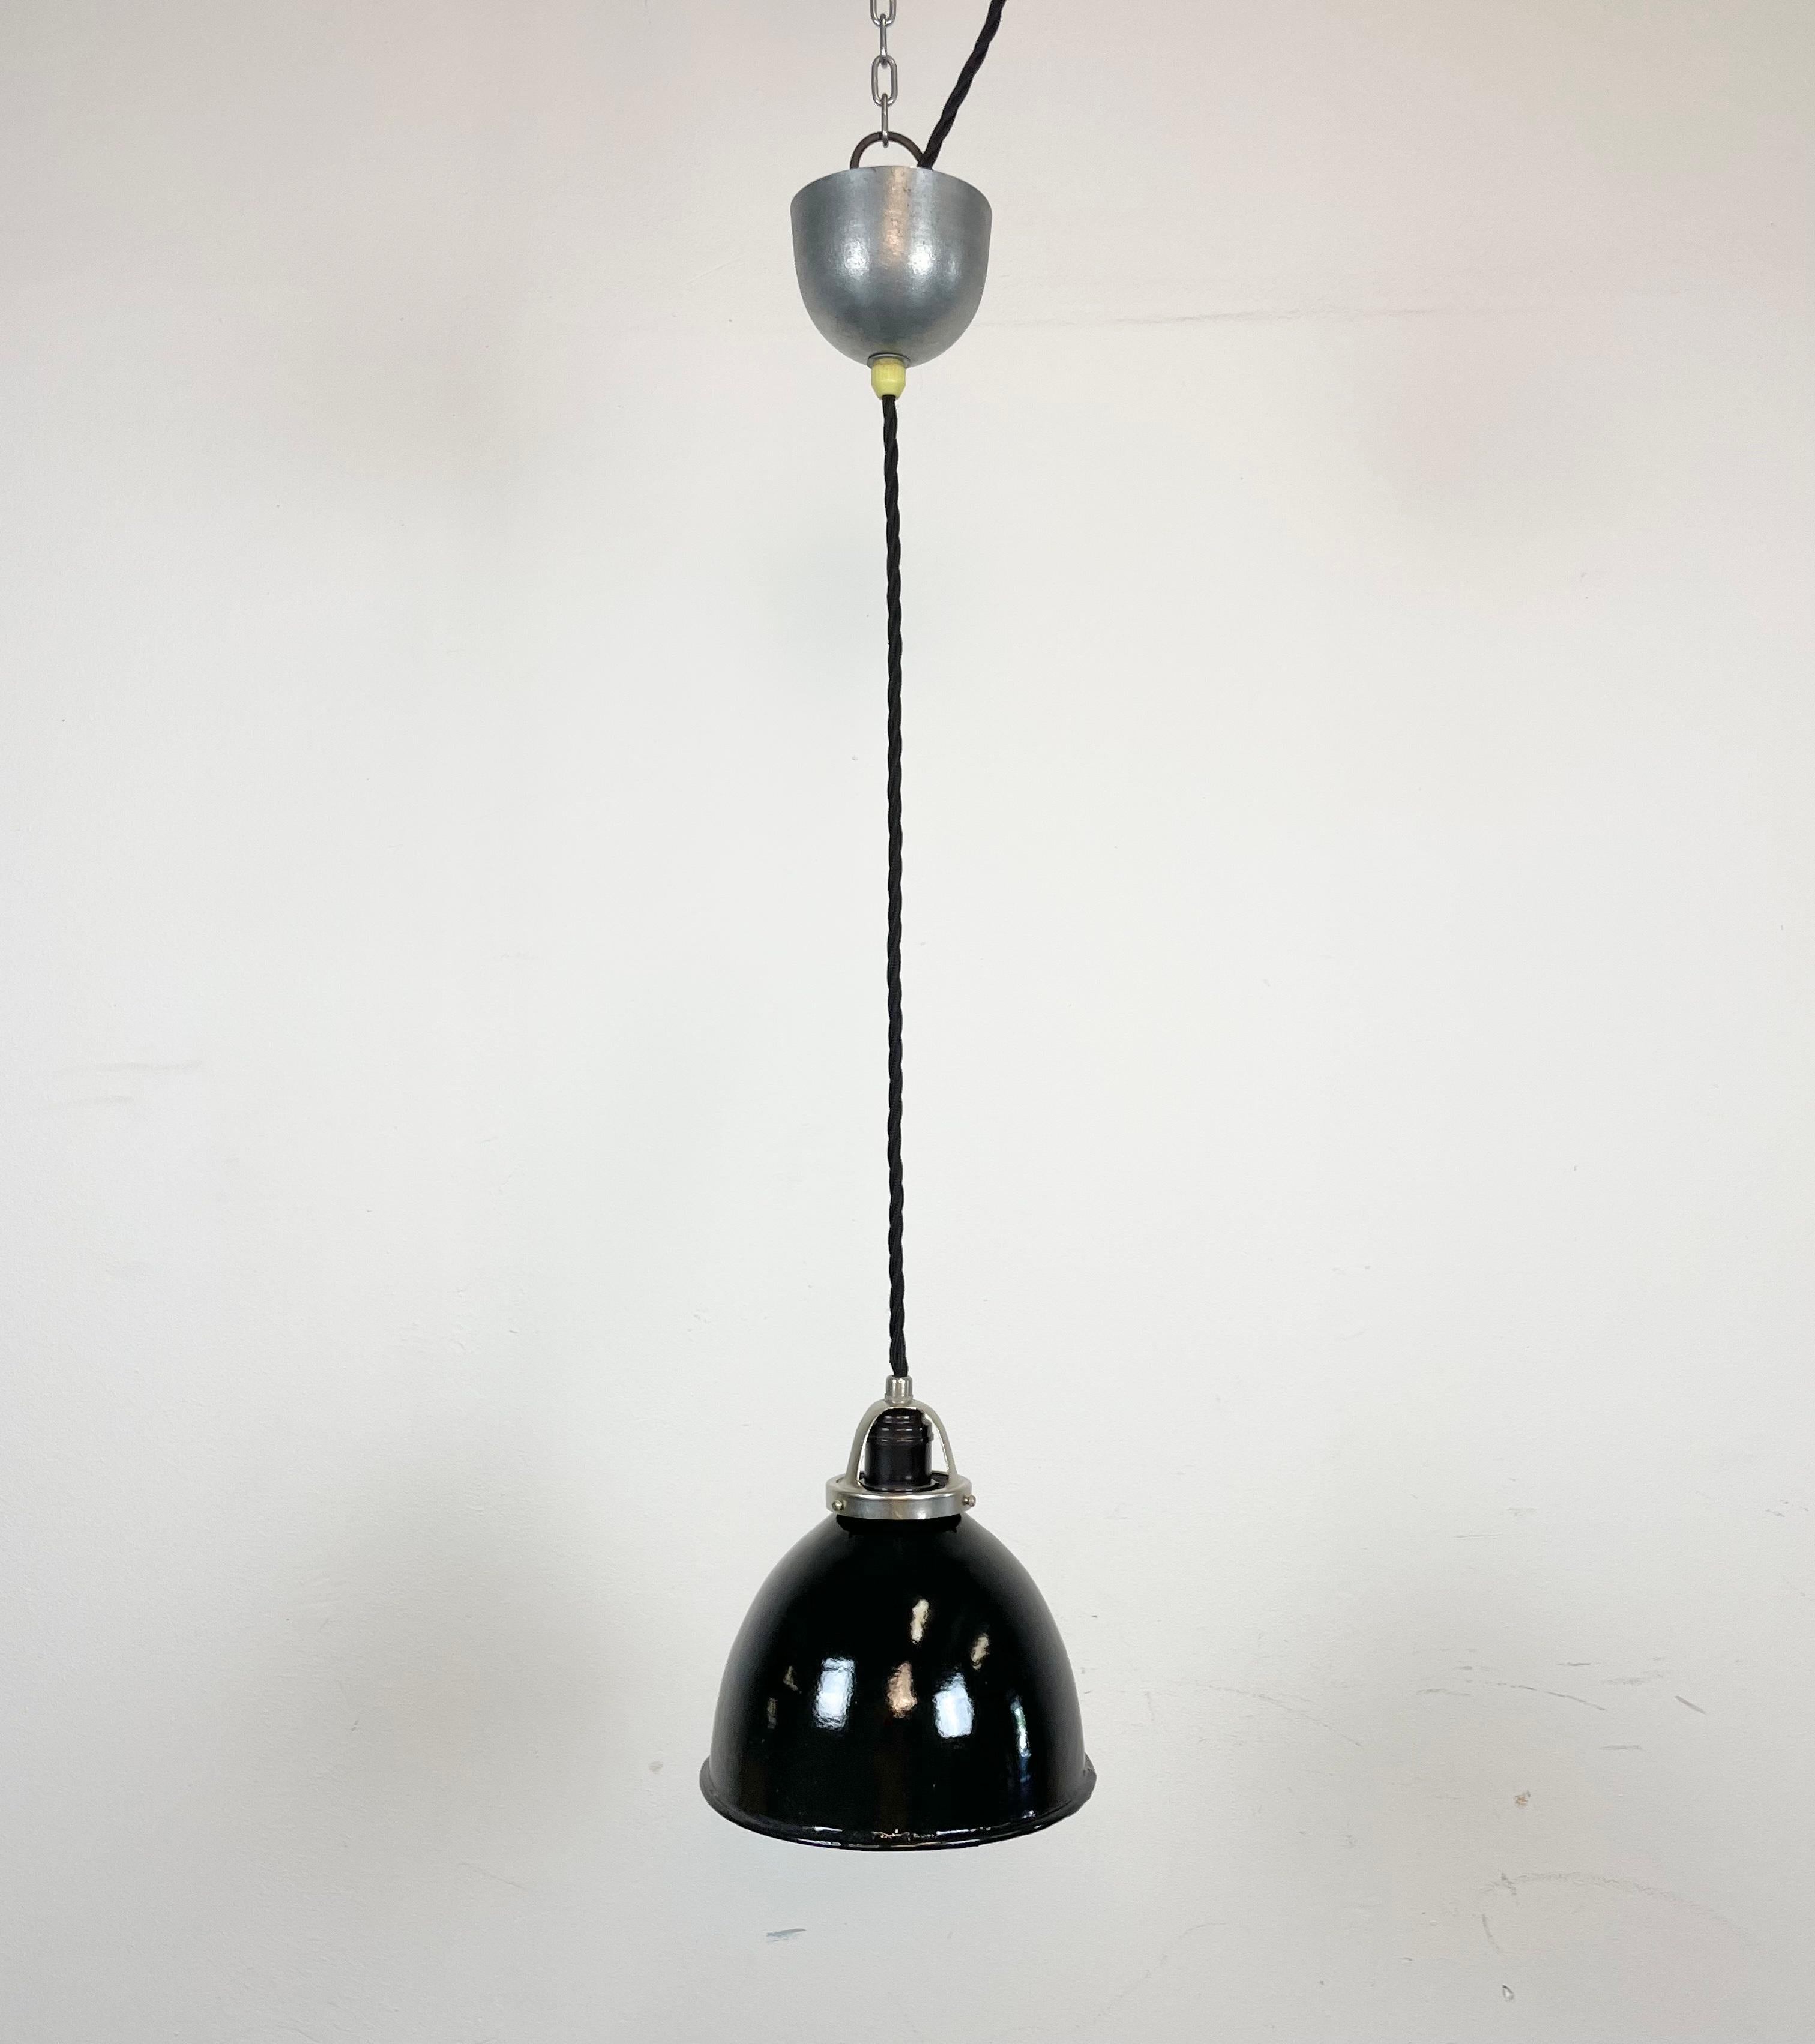 Lampe pendante industrielle en émail noir fabriquée dans l'ancienne Tchécoslovaquie dans les années 1950. Émail blanc à l'intérieur de la teinte. Verrière en métal. La douille nécessite des ampoules E 27/ E 26. Un nouveau fil. Entièrement